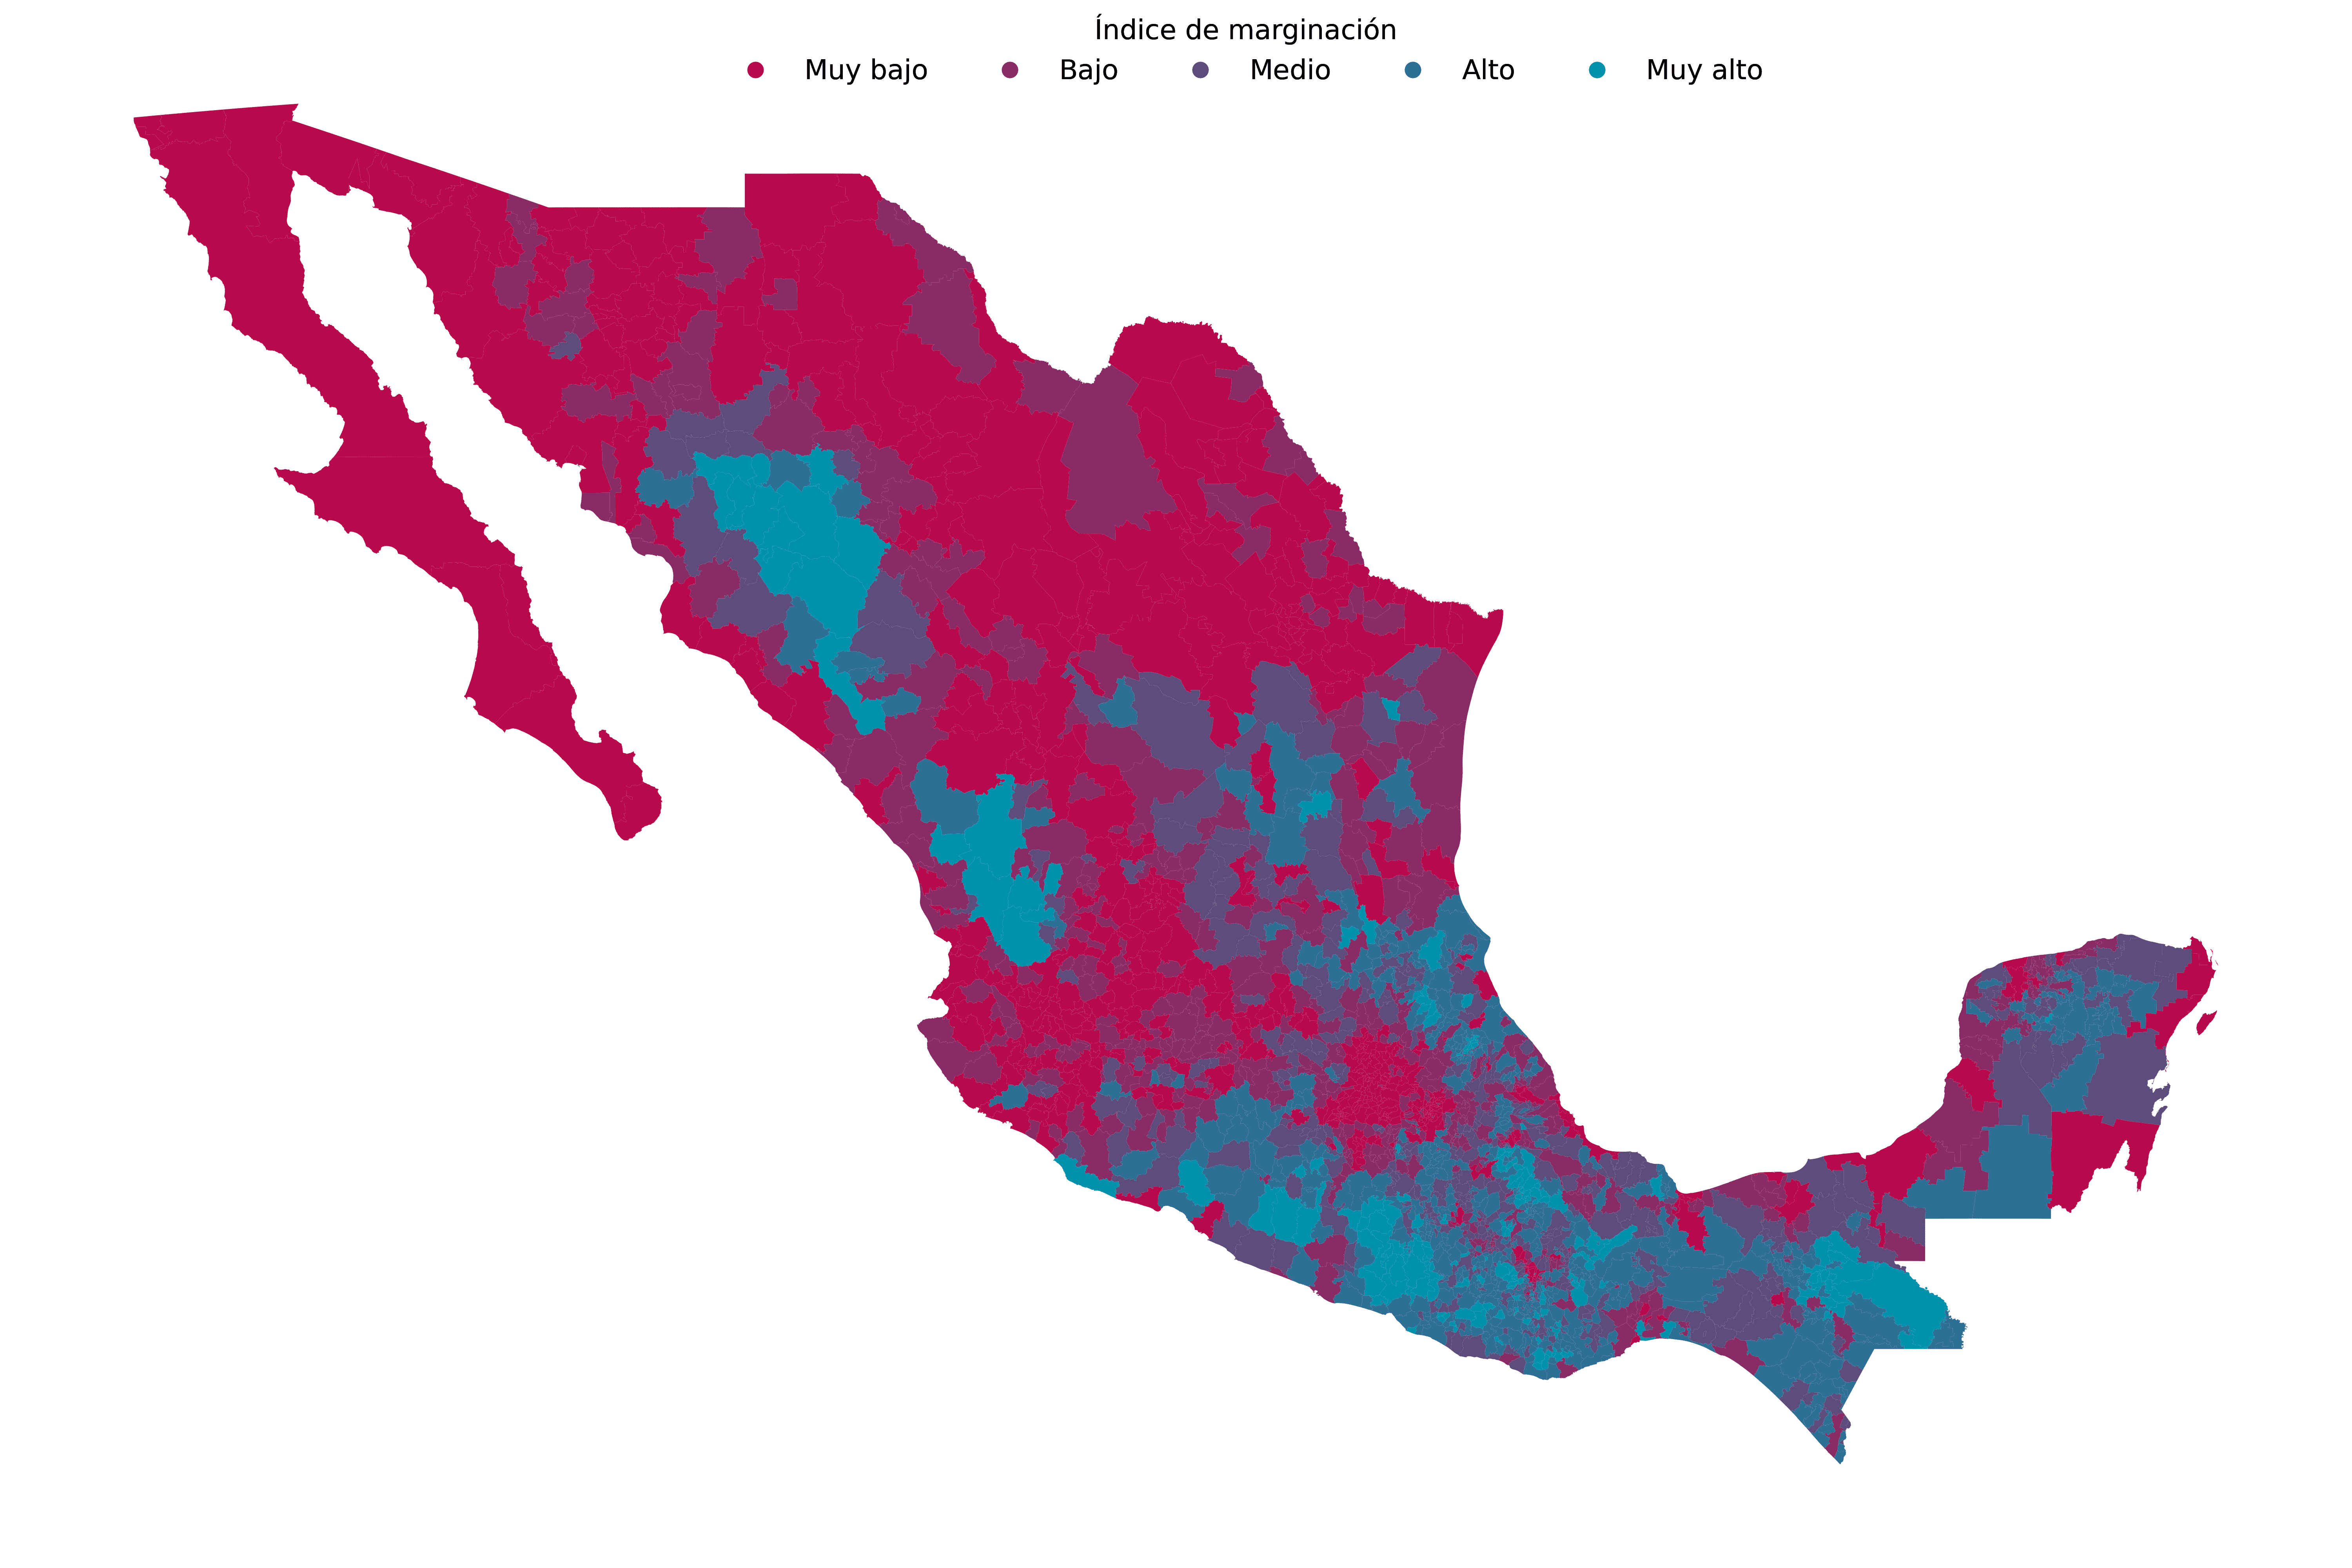 Índice de marginación en México en el periodo 2015-2020.